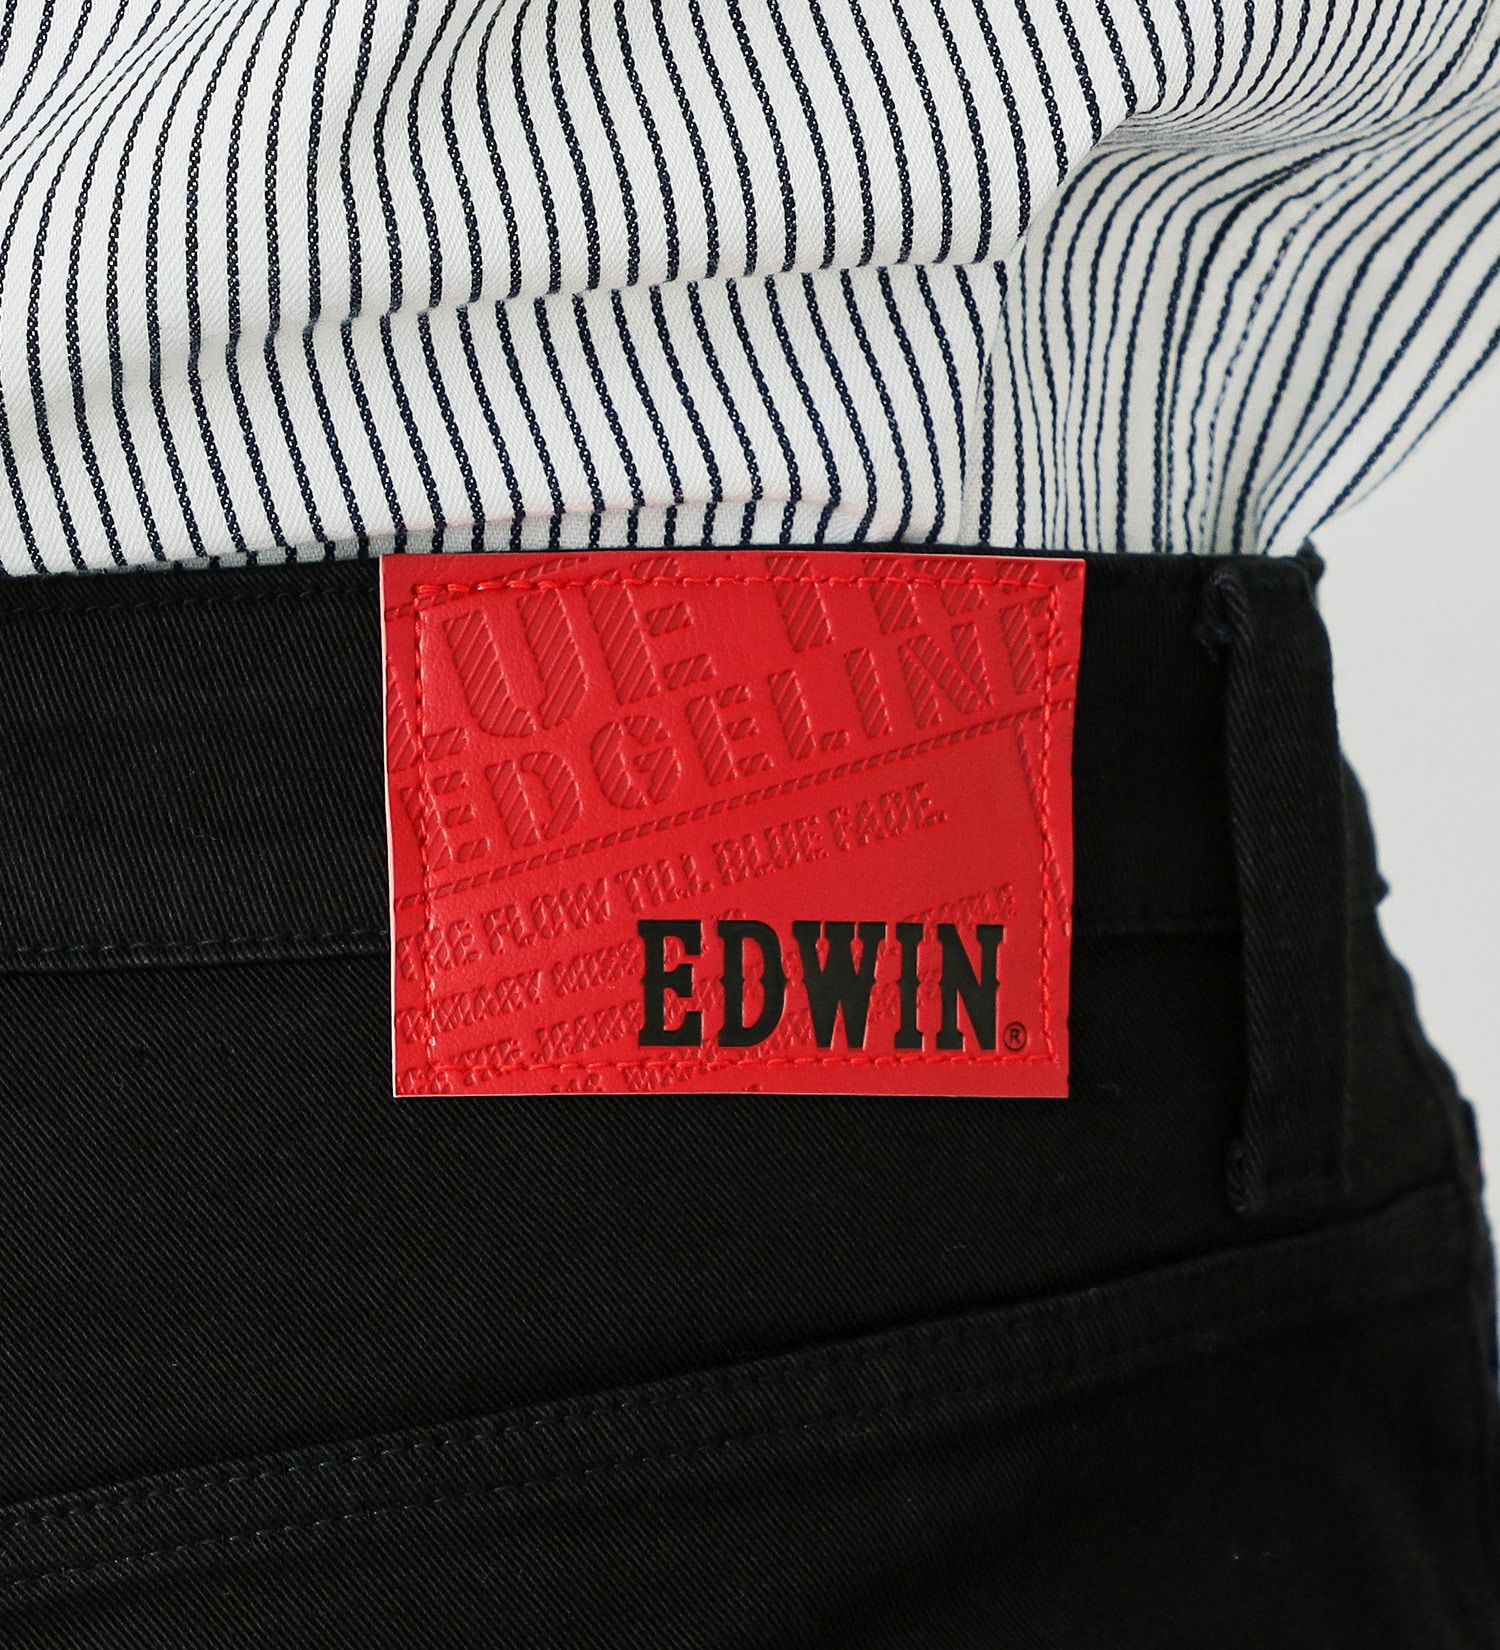 EDWIN(エドウイン)の【おまとめ割対象】【試着対象】EDGE LINE レギュラーストレートパンツ【アウトレット店舗・WEB限定】|パンツ/パンツ/メンズ|ブラック